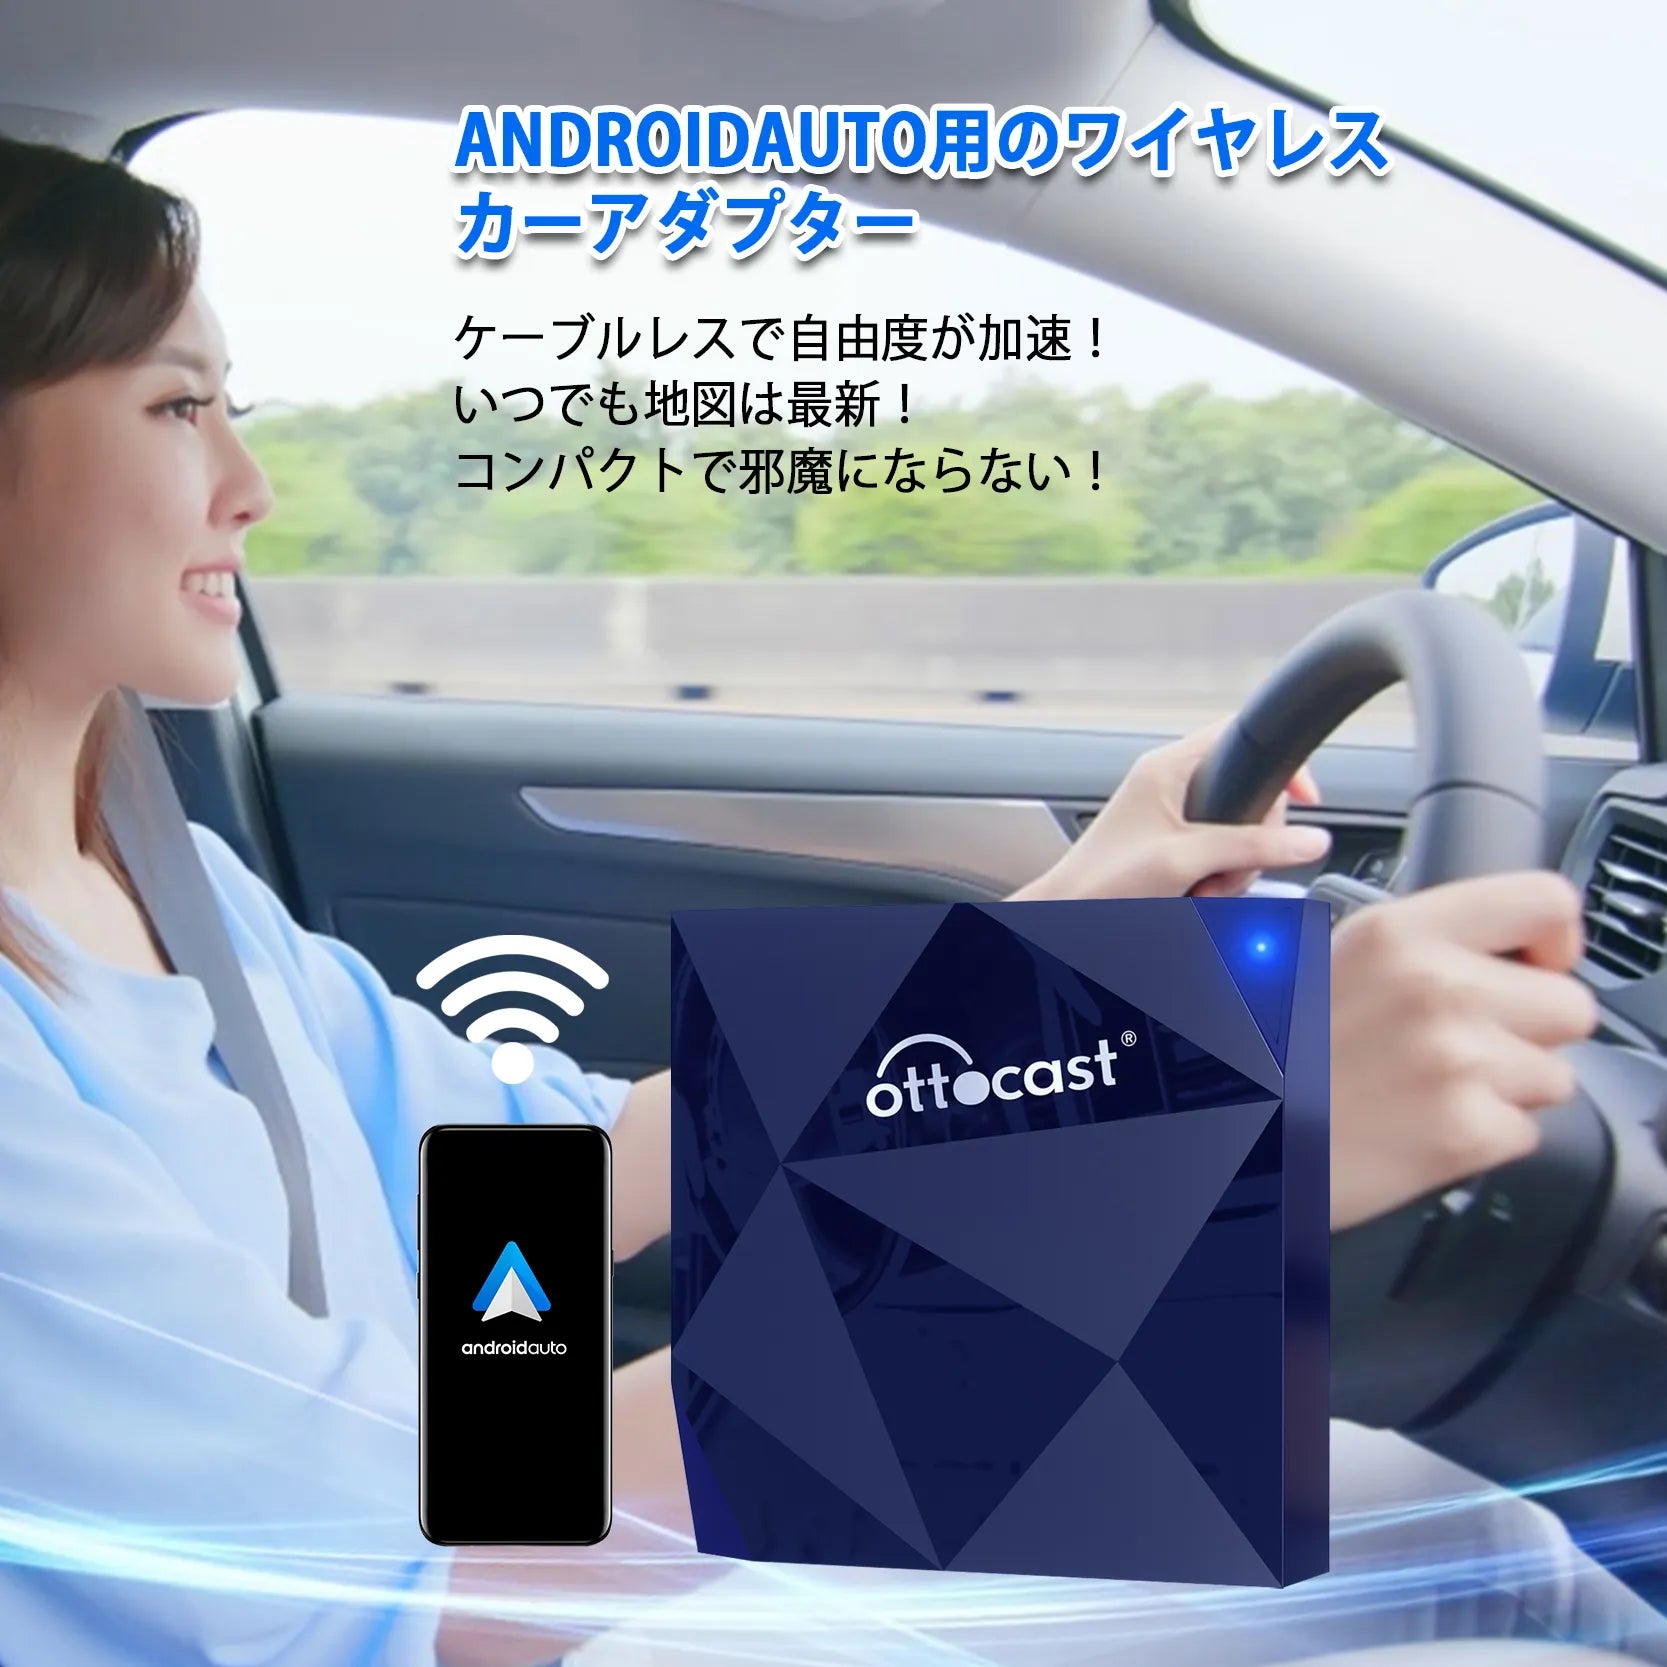 オットキャストOttocast A2Air android auto 無線化アダプター アンドロイドオートワイヤレス